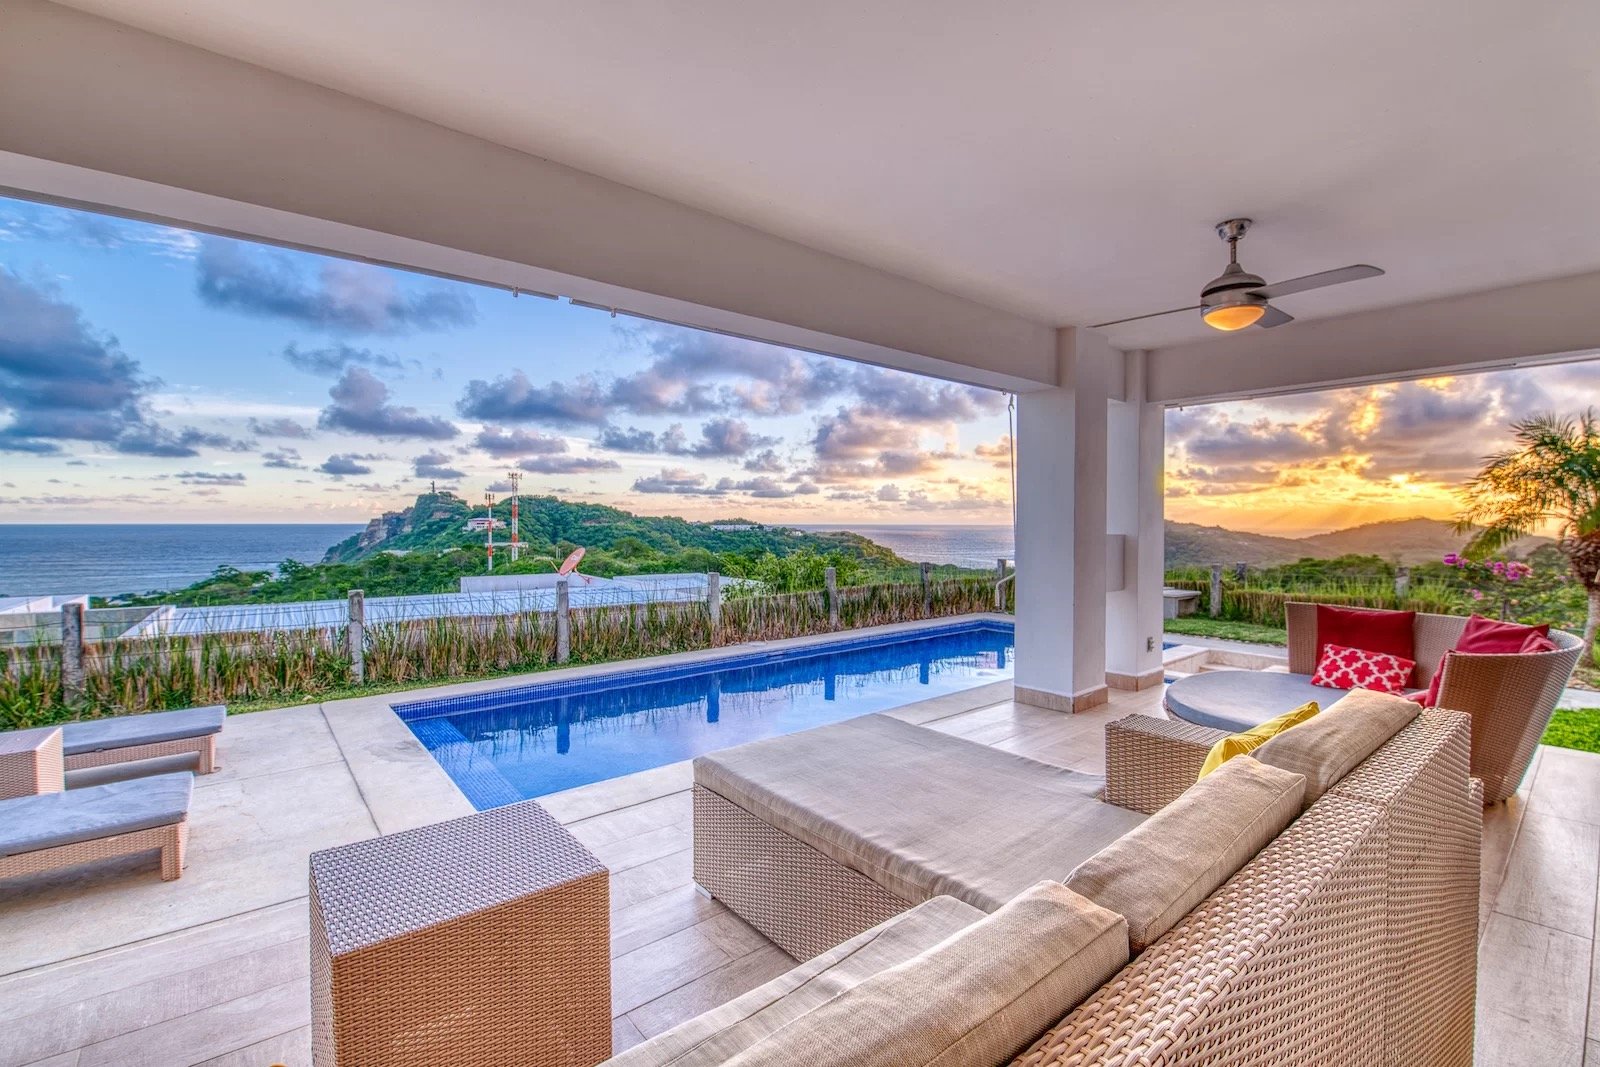 Luxury home for sale San Juan Del Sur Nicaragua Real estate property 28.jpg.jpeg